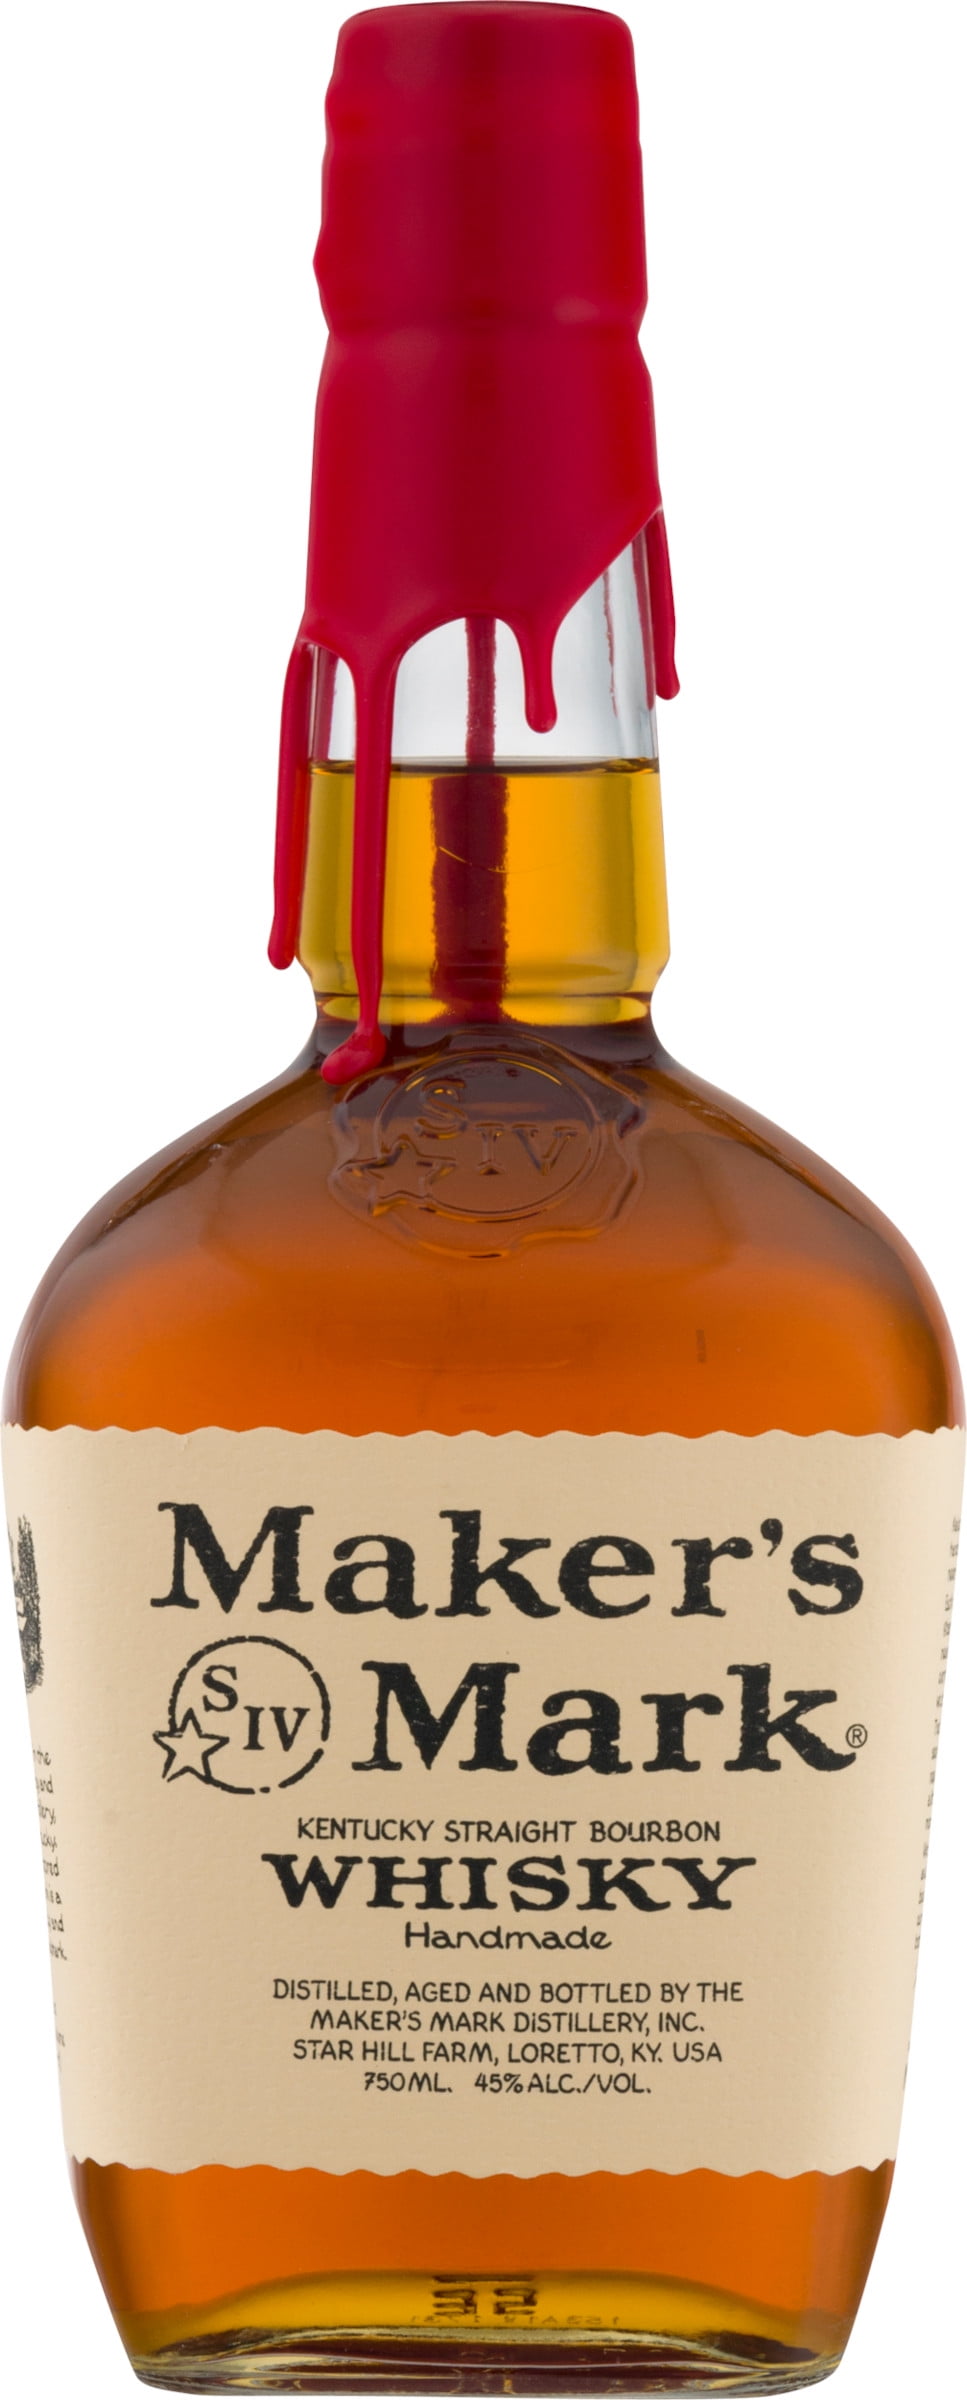 Maker's Mark Bourbon Whisky, 750mL - Walmart.com